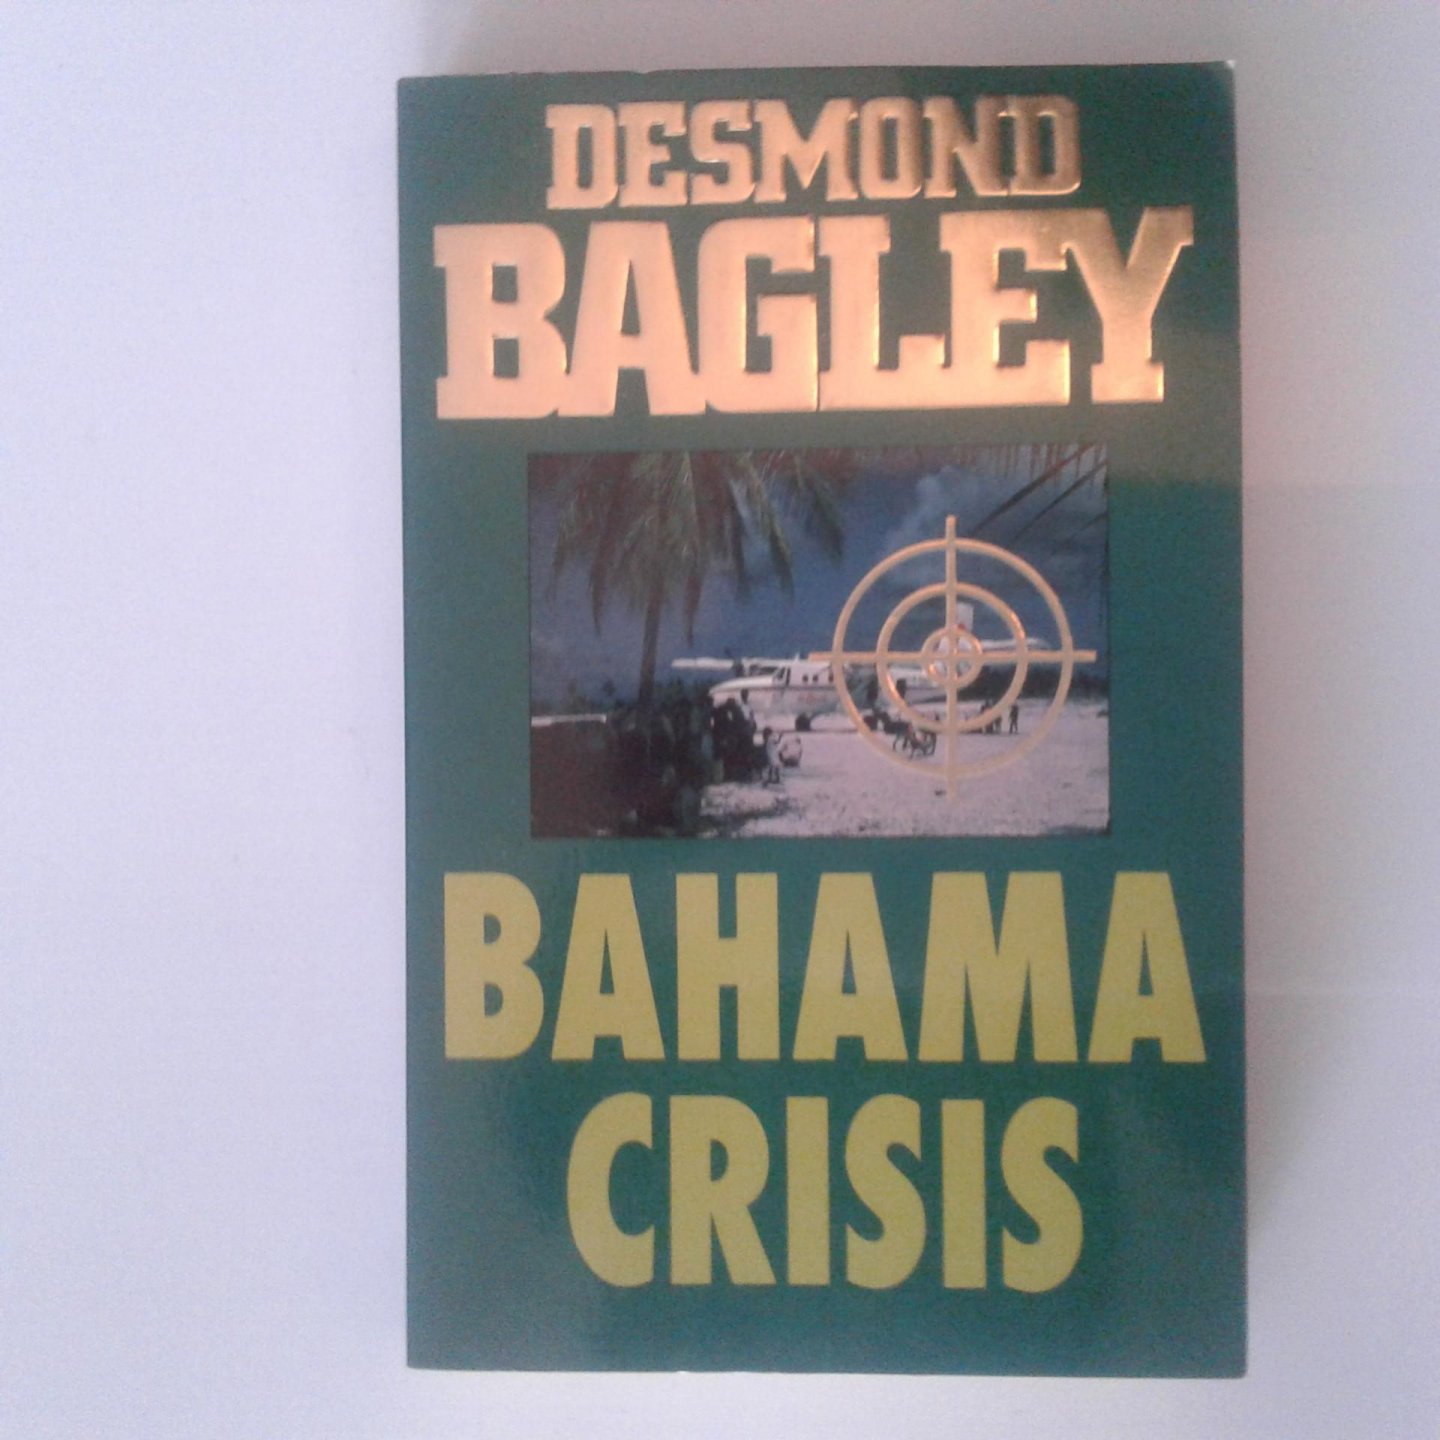 Bagley, Desmond - Bagley ; Bahama crisis